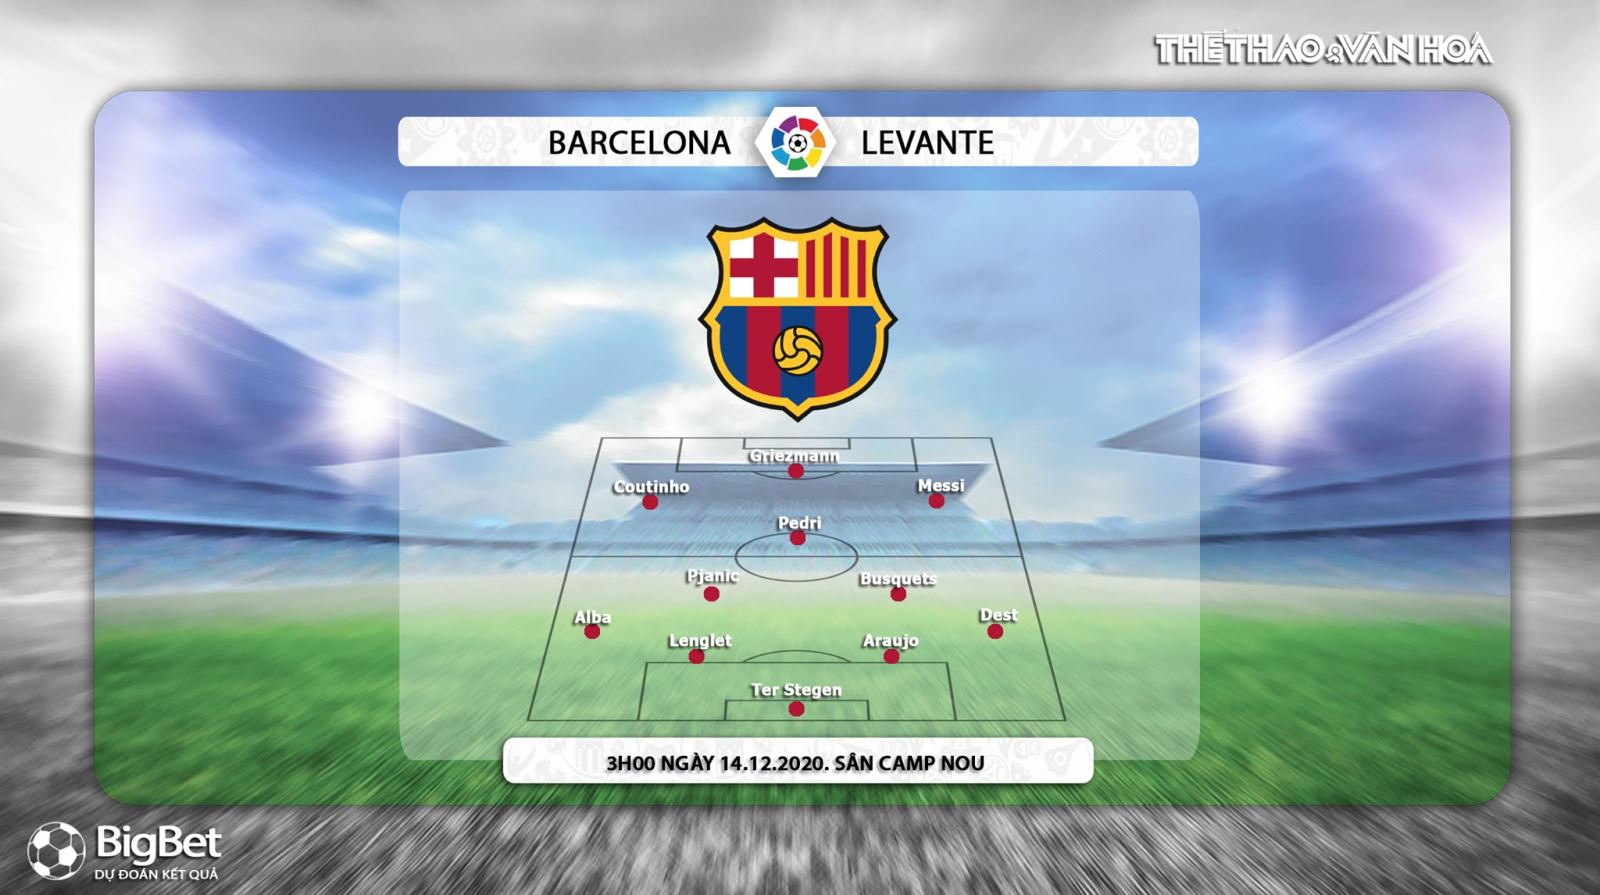 Keo nha cai, Kèo nhà cái, Barcelona vs Levante, Trực tiếp bóng đá, BĐTV, La Liga vòng 13, soi kèo Barcelona vs Levante, trực tiếp bóng đá, kèo Barcelona, kèo Levante